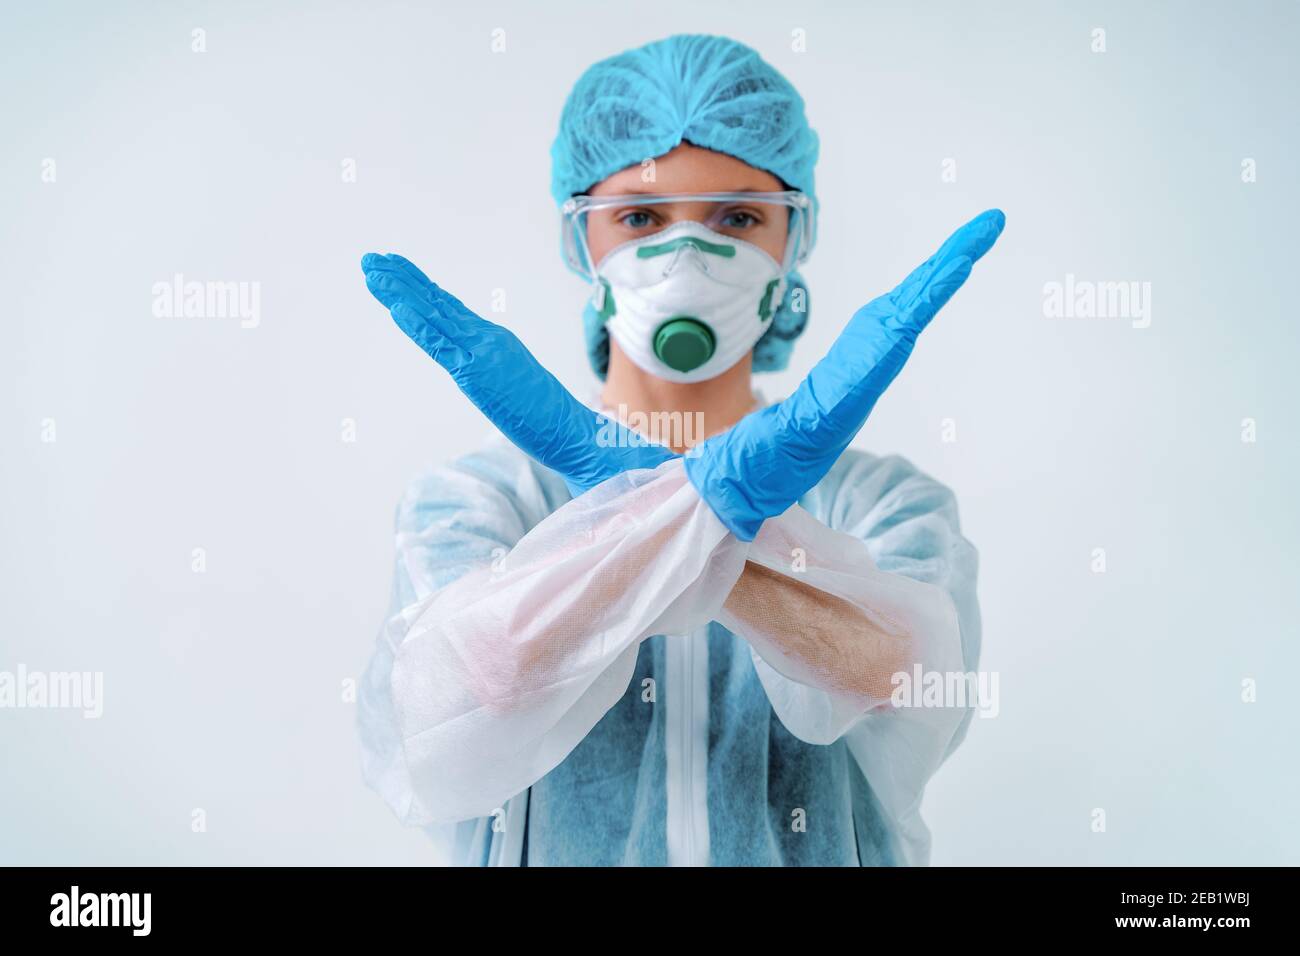 Gesundheitsarbeiter in Schutzanzug und medizinische Maske zeigt Stop-Geste, um einen Ausbruch des Virus zu kontrollieren Stockfoto